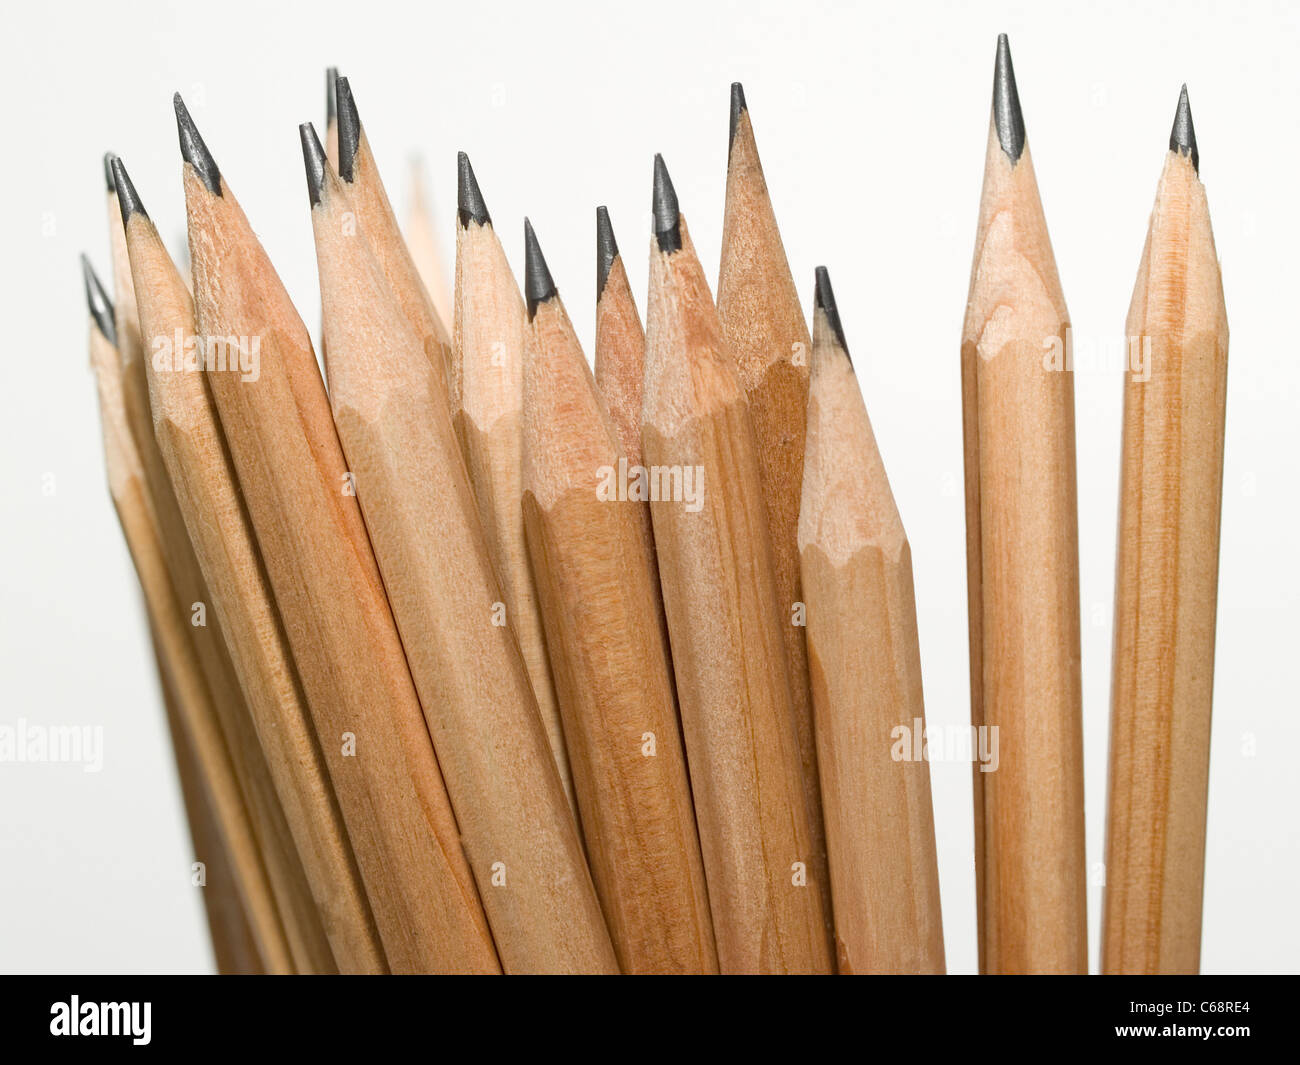 viele Bleistifte mit den Spitzen nach oben | many pencils with the tops upright Stock Photo